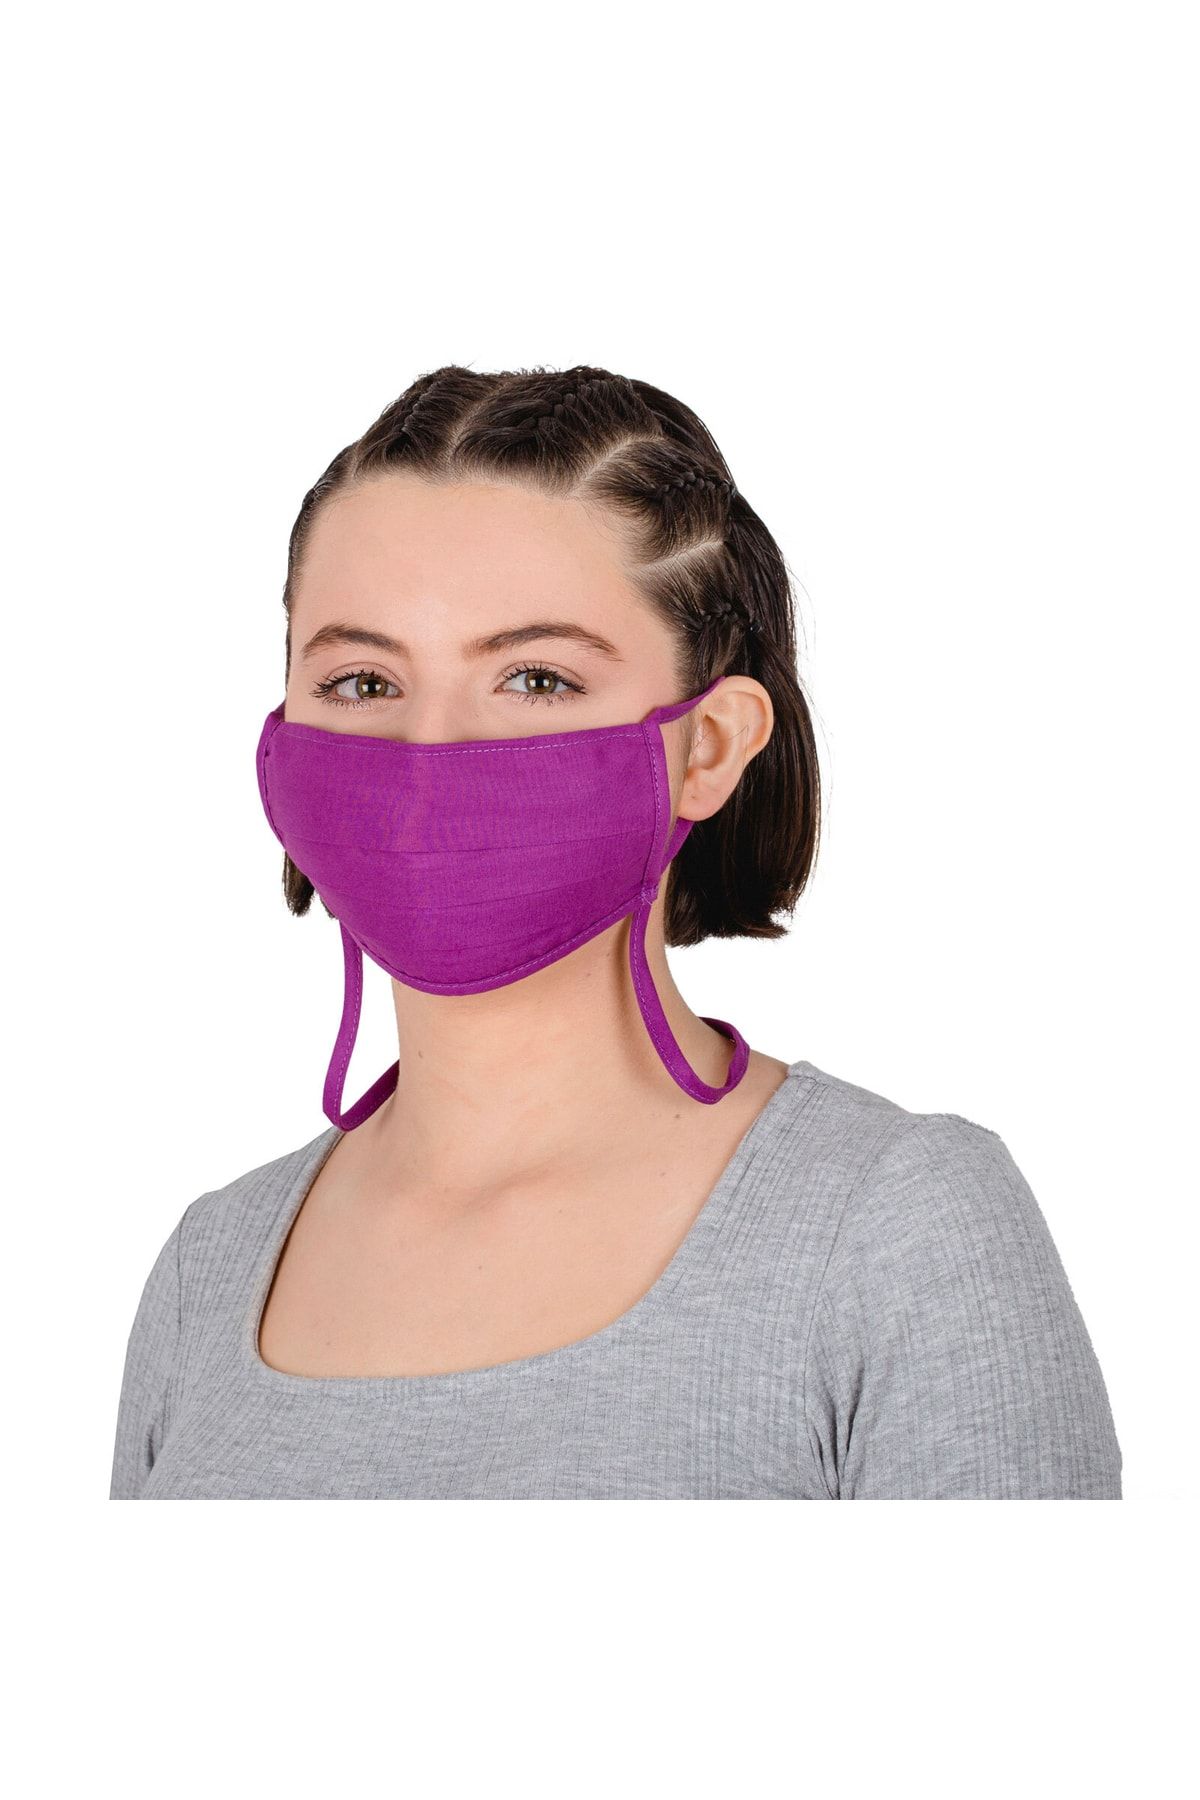 Mersin Alzheimer Derneği Derneği - Mor Renk Düz Model Boyundan Askılı Yıkanabilir Iki Katlı M Beden Filtre Cep Maske